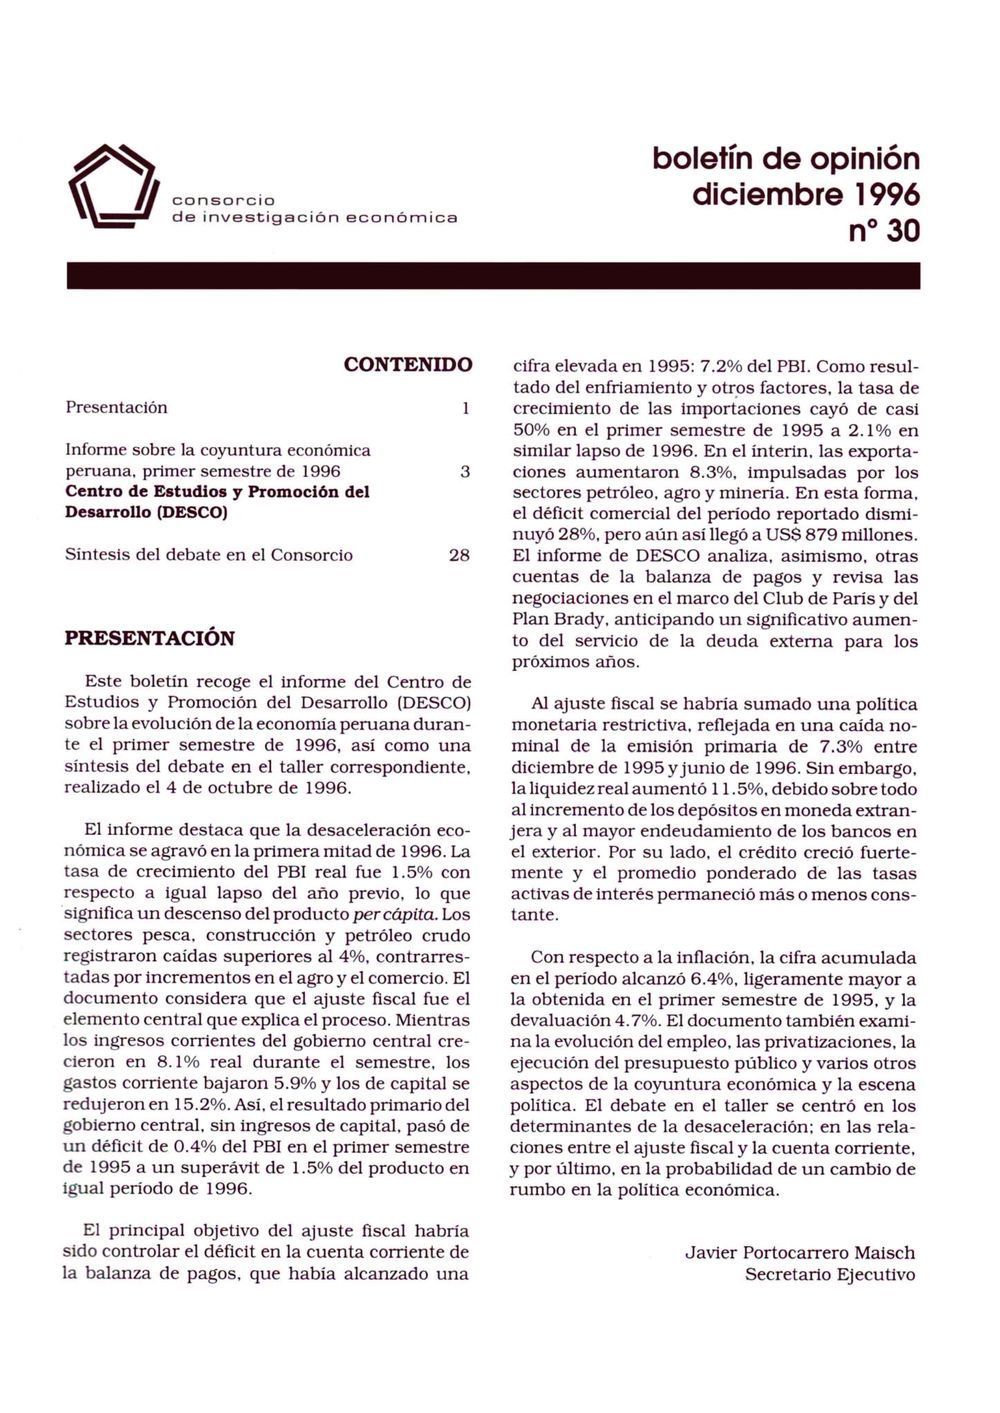 Boletín de opinión: Análisis de la economía peruana, 1996-I